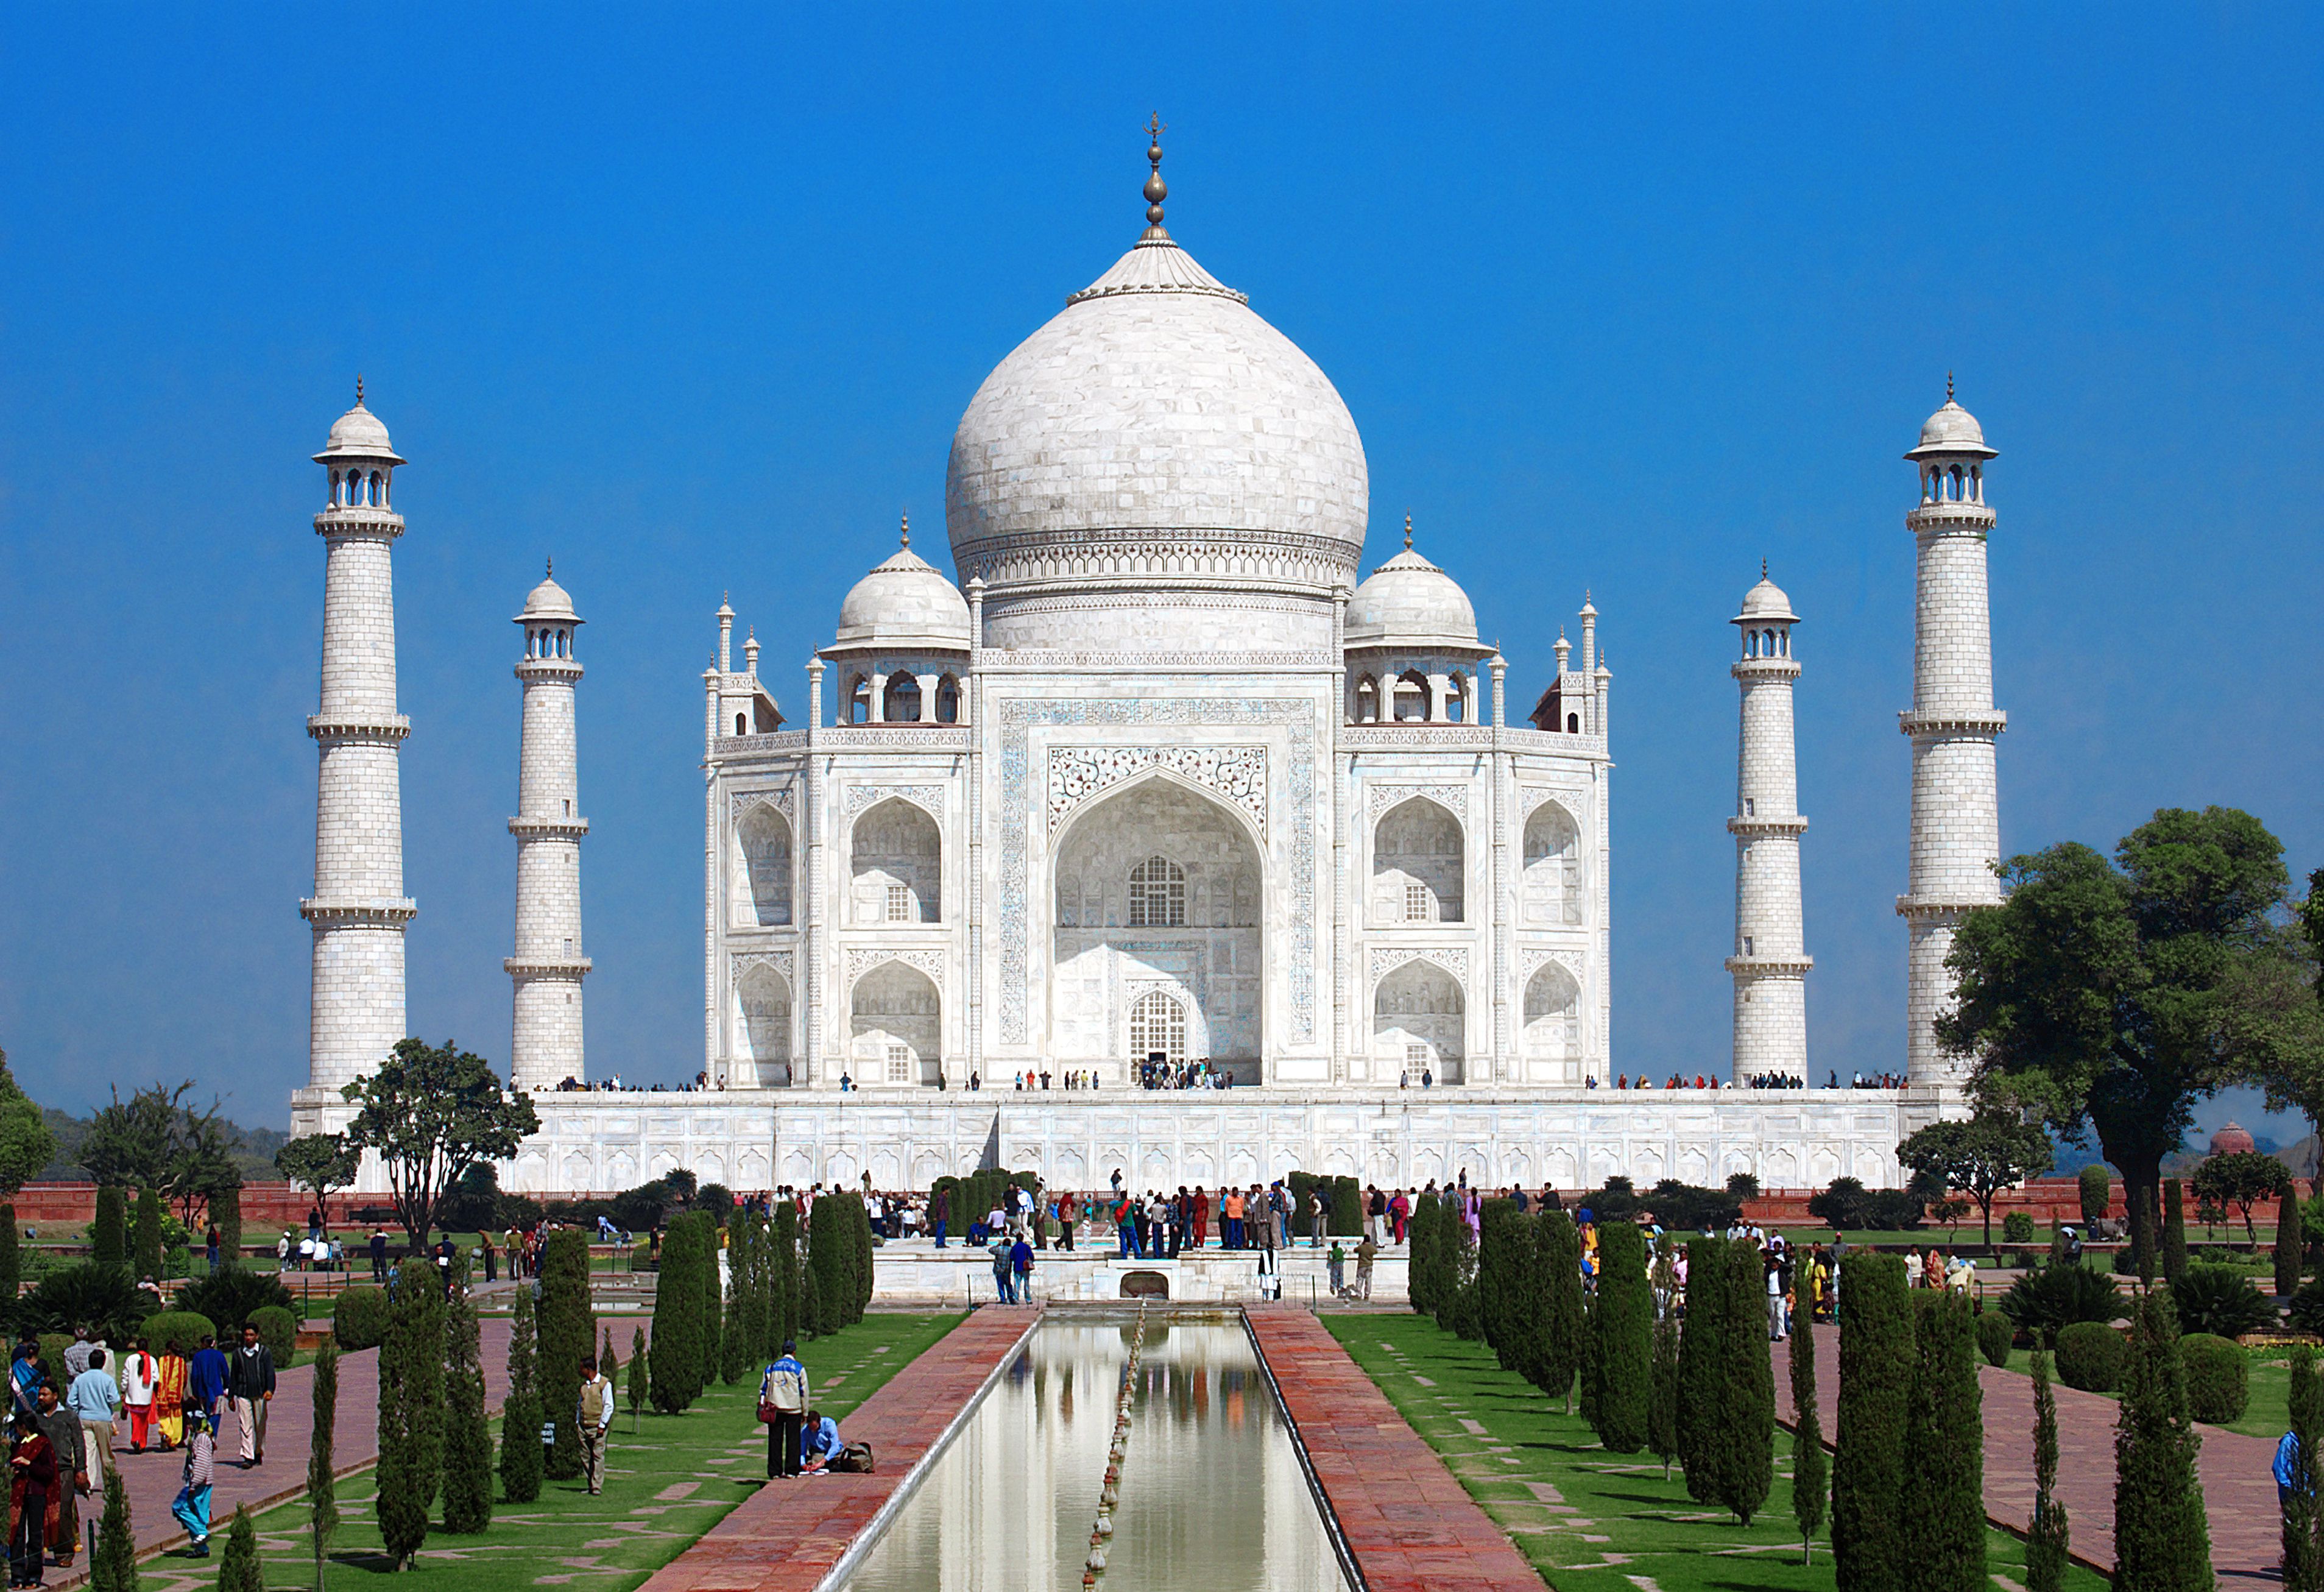  Agra : ताजमहल का दीदार होगा महंगा, 10 से लेकर 100 रुपए तक बढ़ेगी एंट्री फीस | Nation One